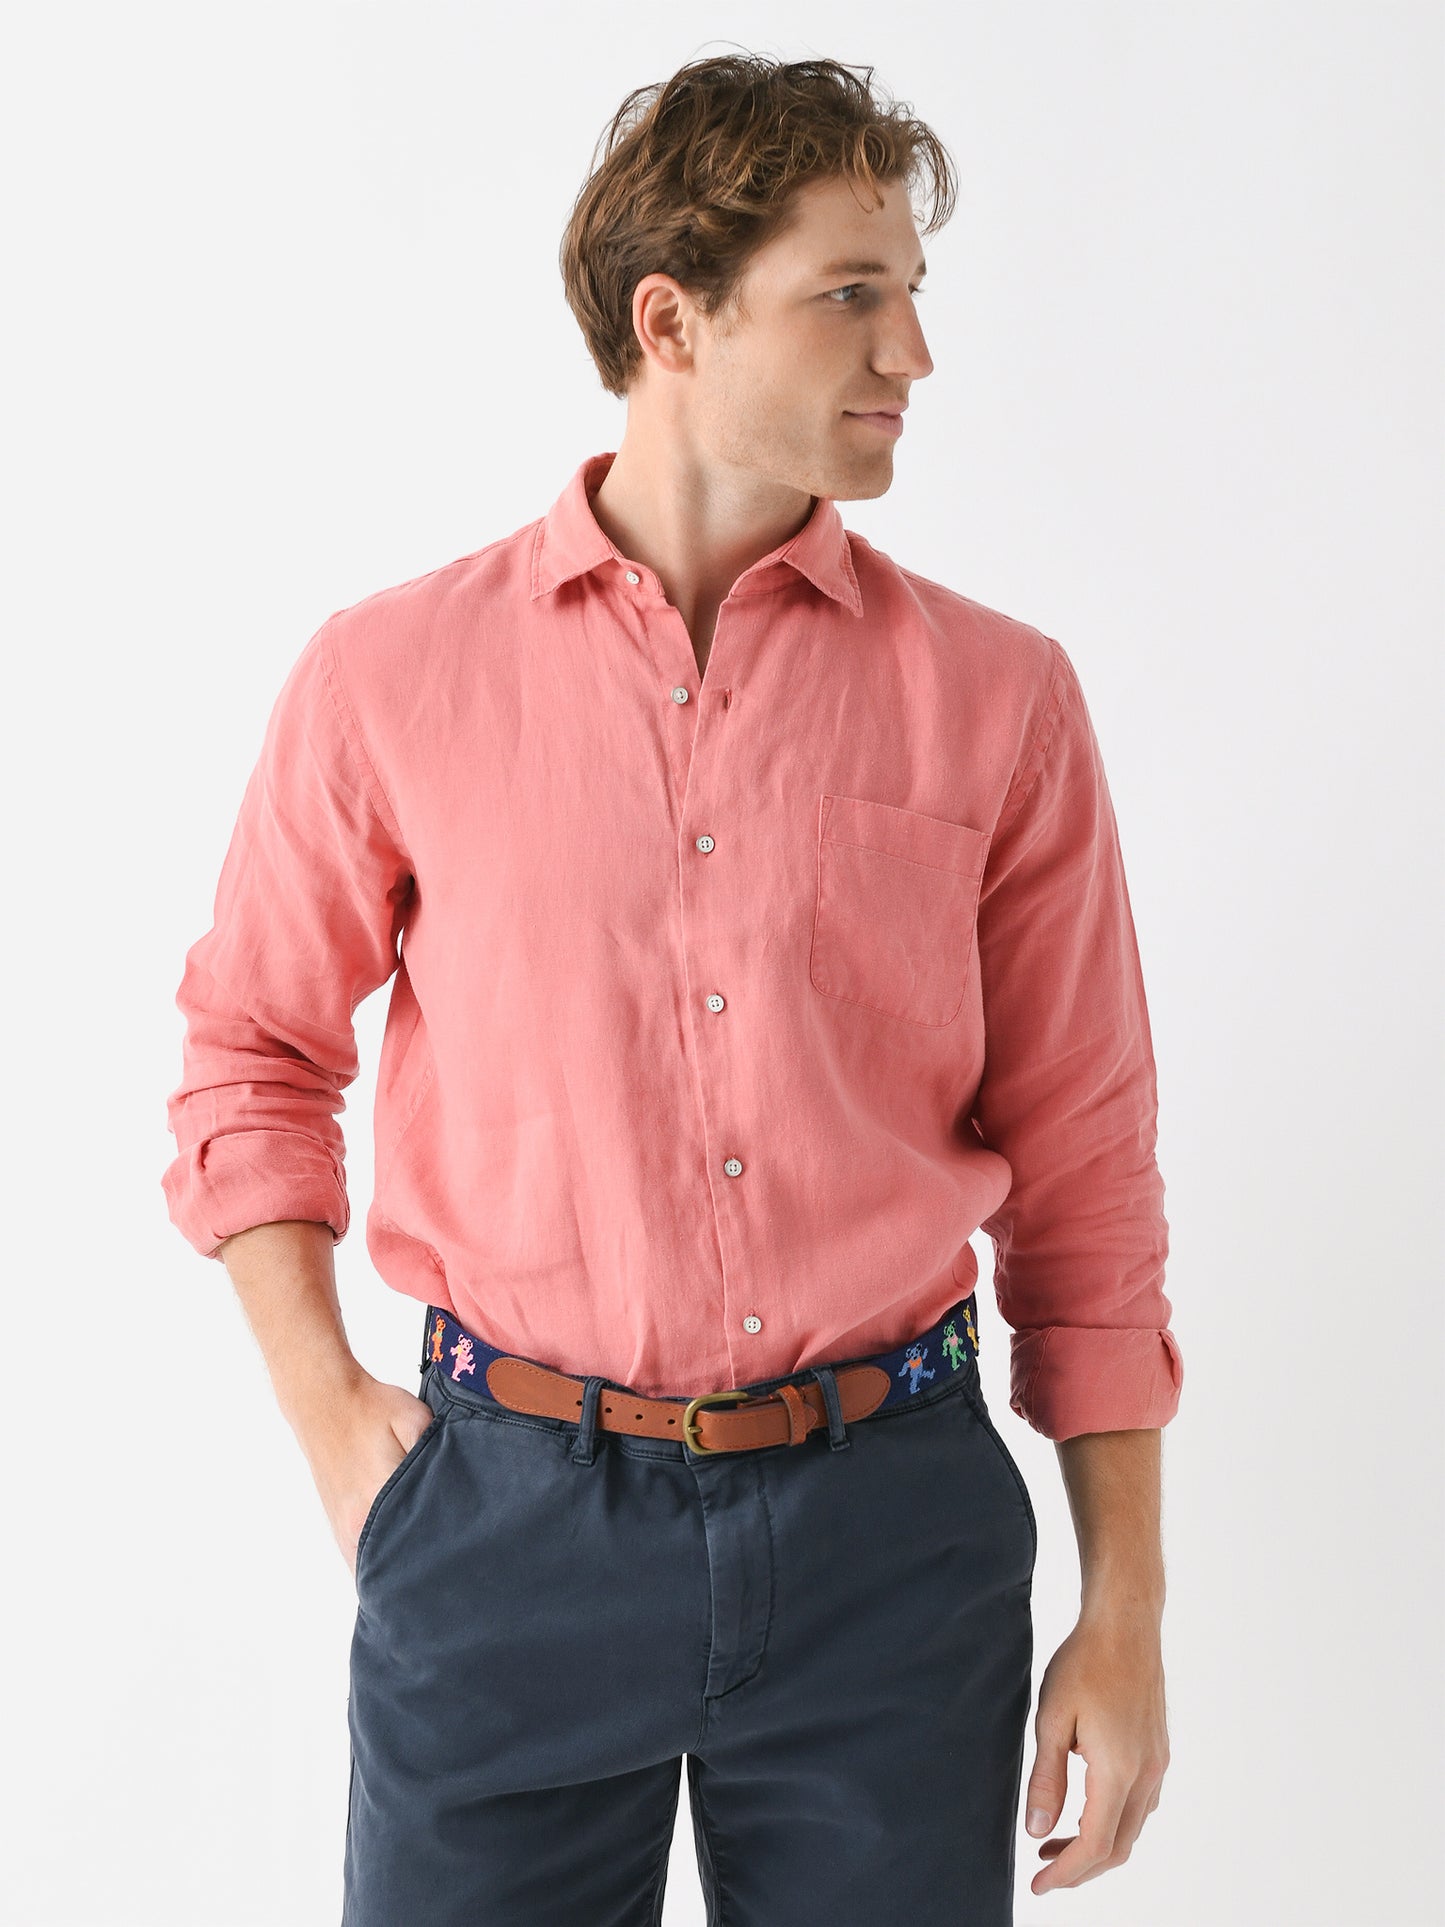 Peter Millar Crown Men's Coastal Garment Dyed Linen Sport Shirt